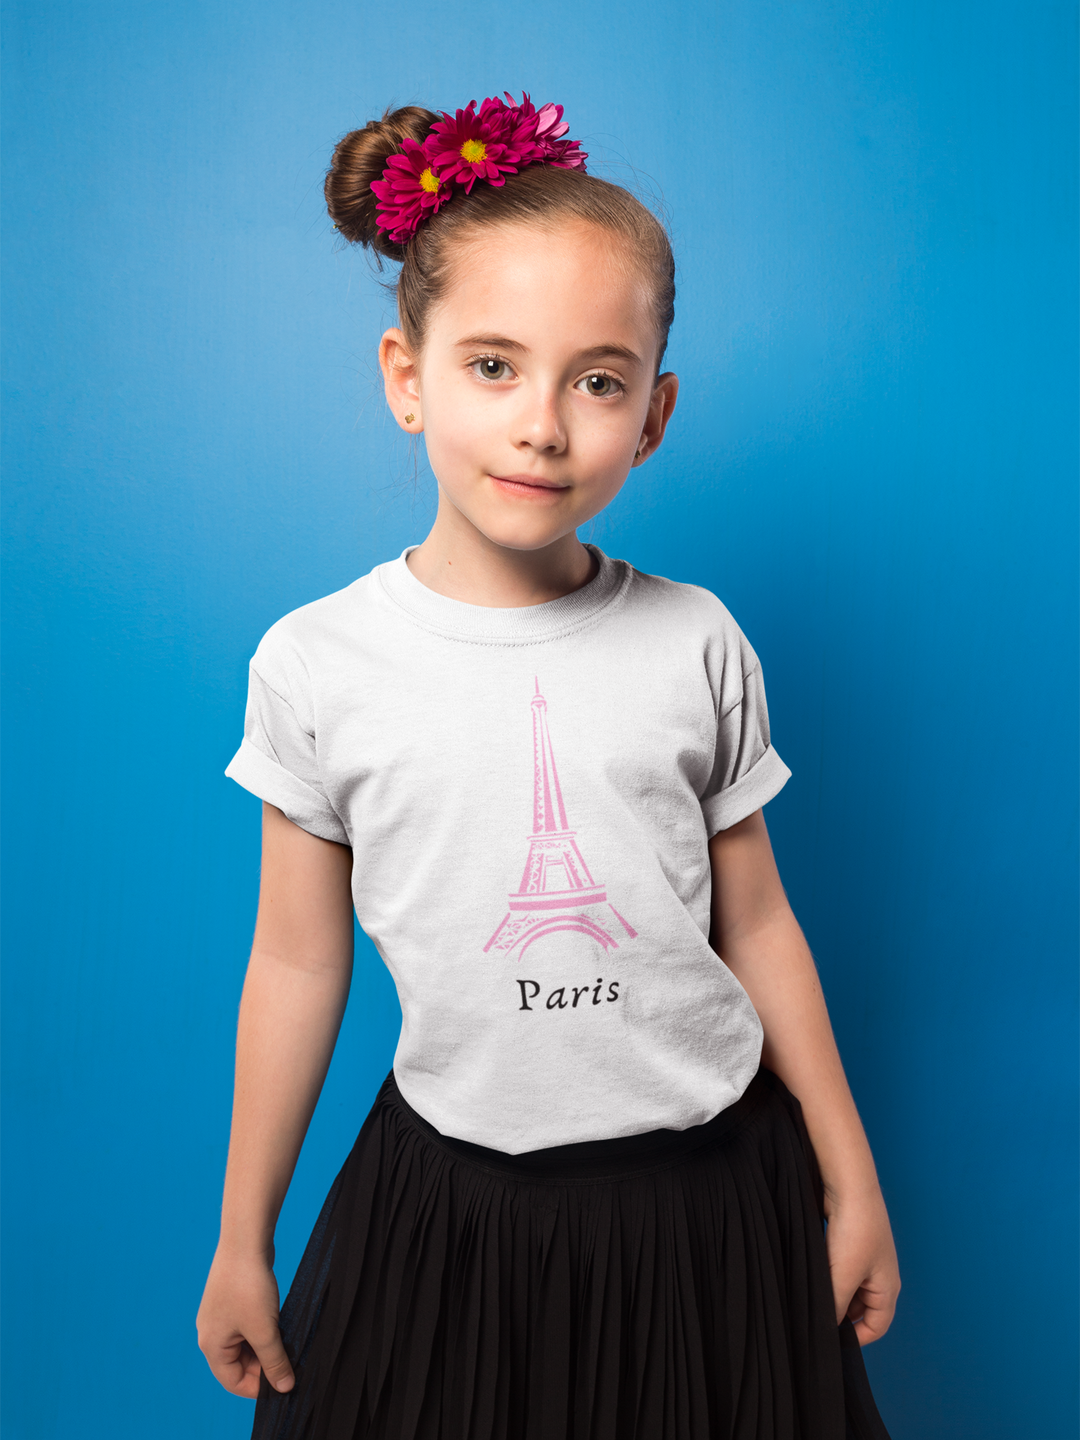 Paris. Short sleeve t shirt for toddler and kids. - TeesForToddlersandKids -  t-shirt - seasons, summer - paris-short-sleeve-t-shirt